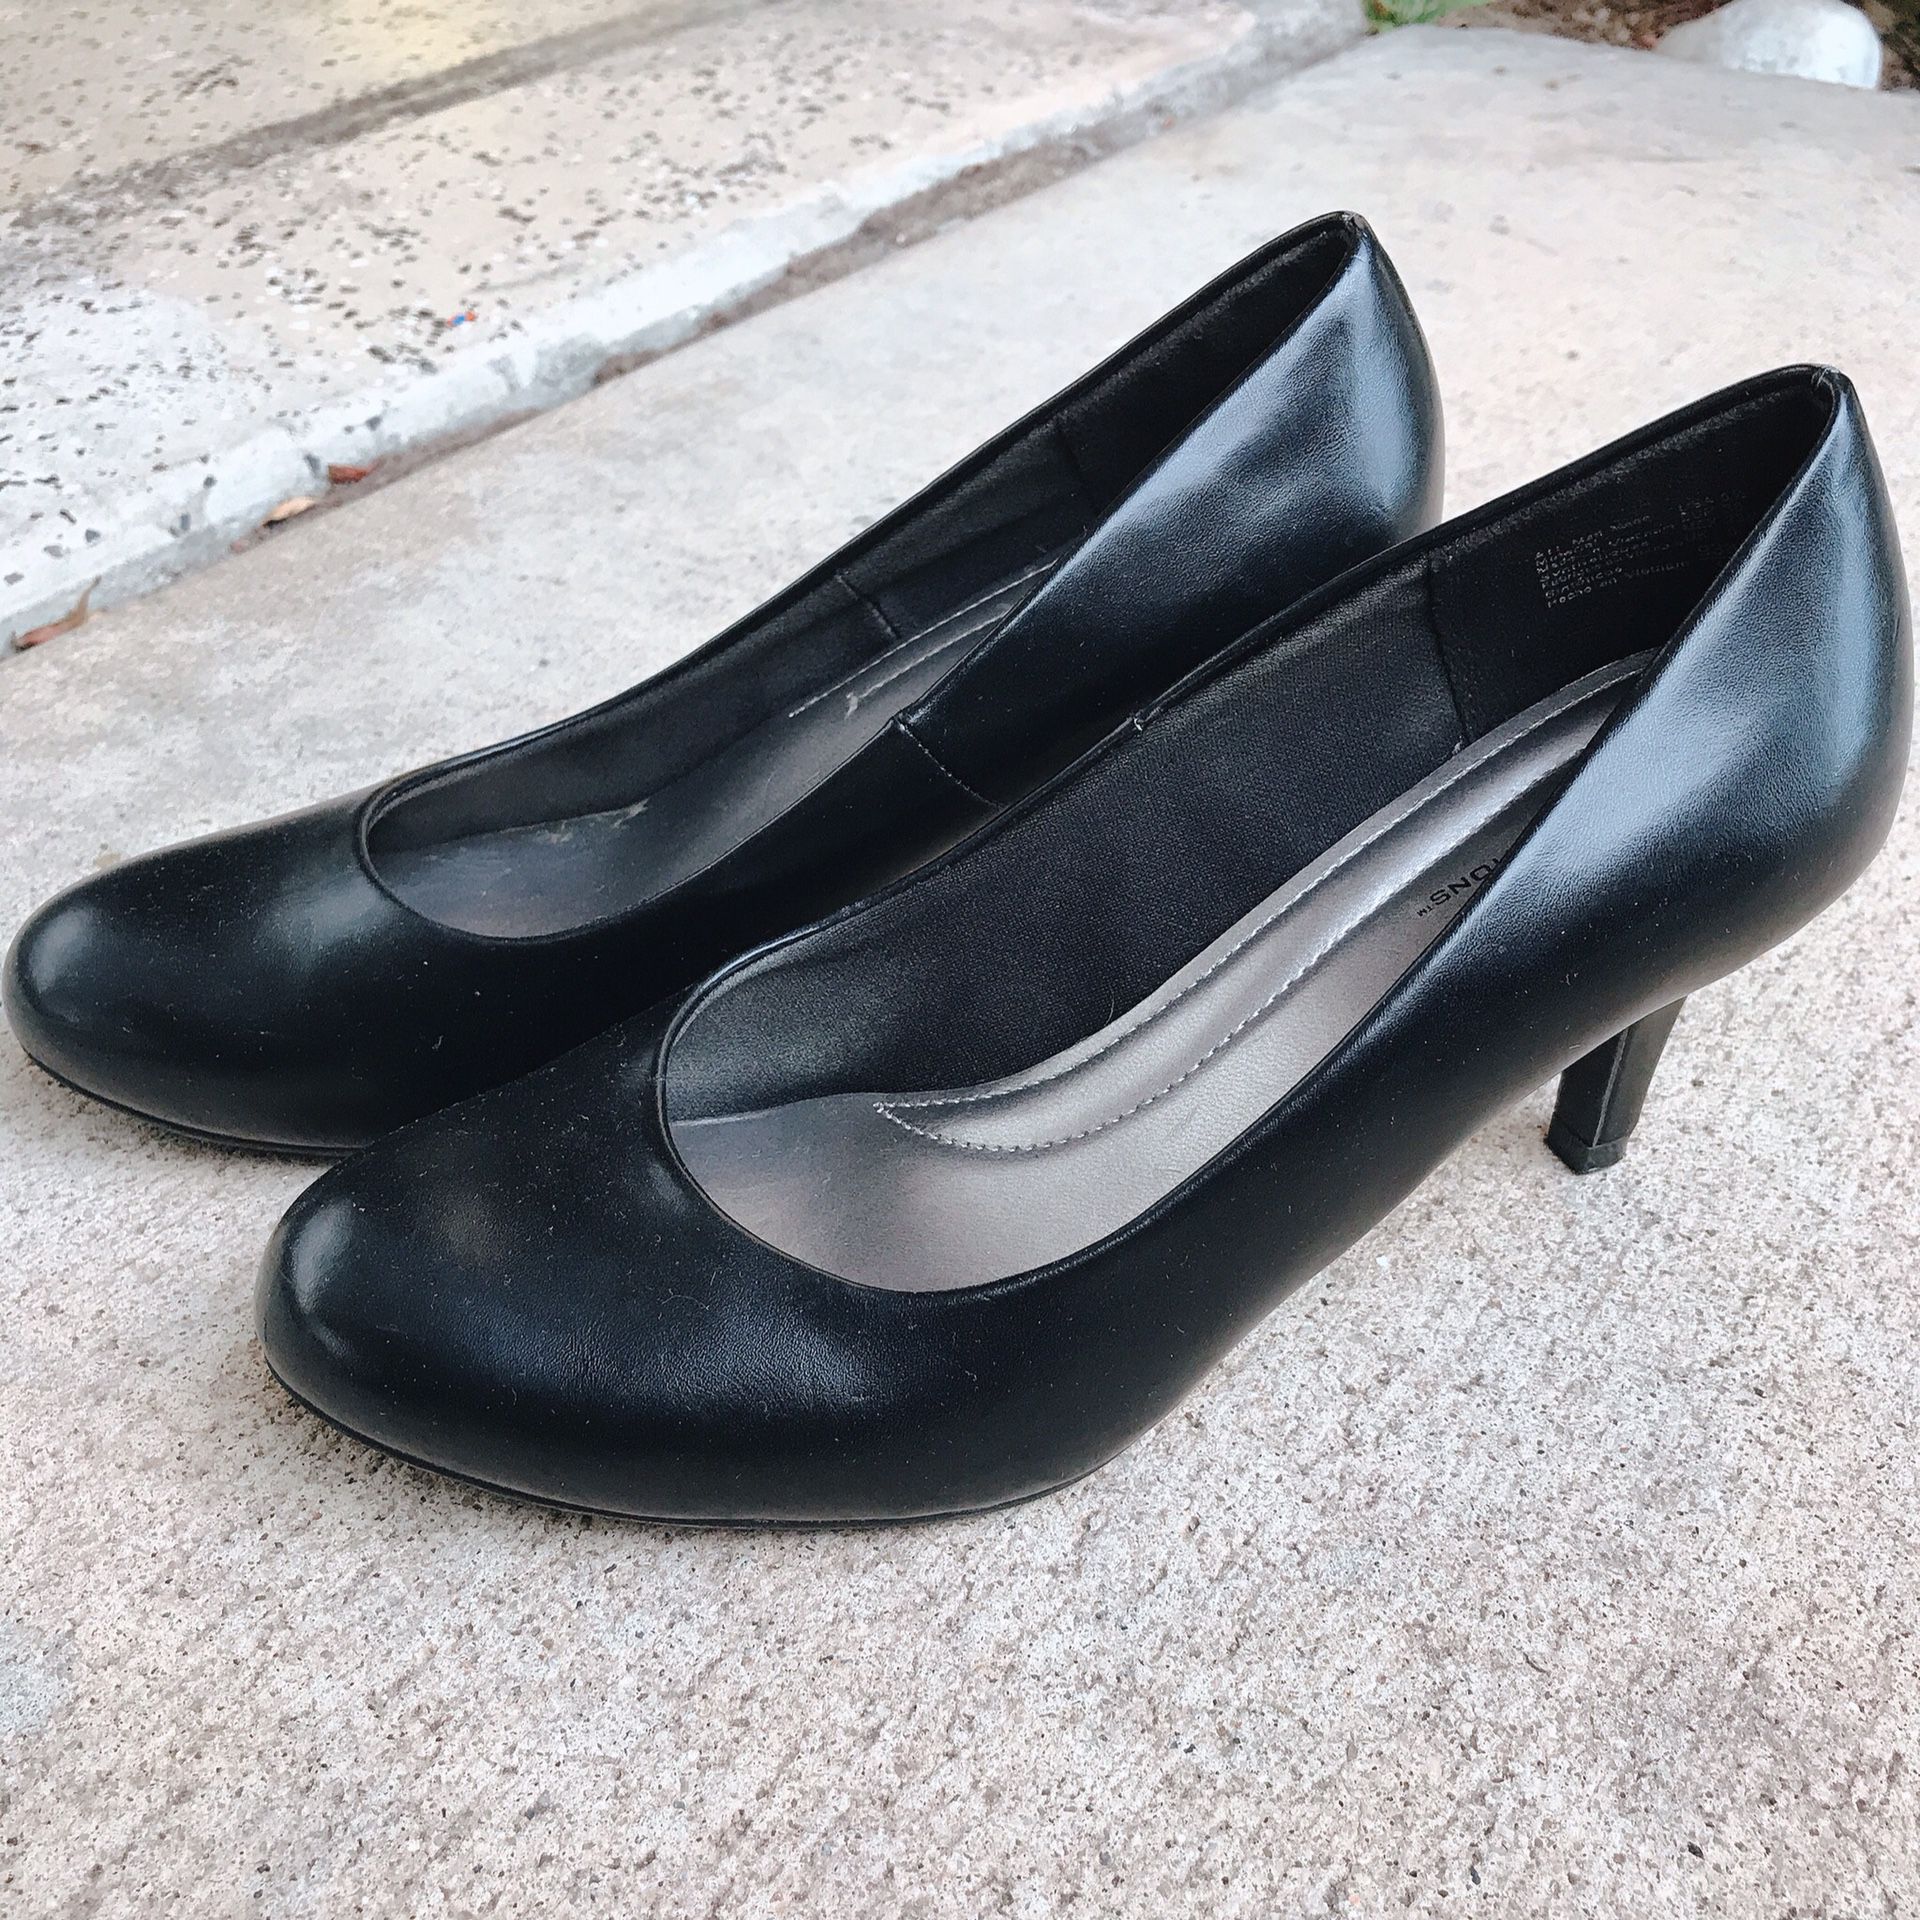 Women’s black heels - size 6 1/2